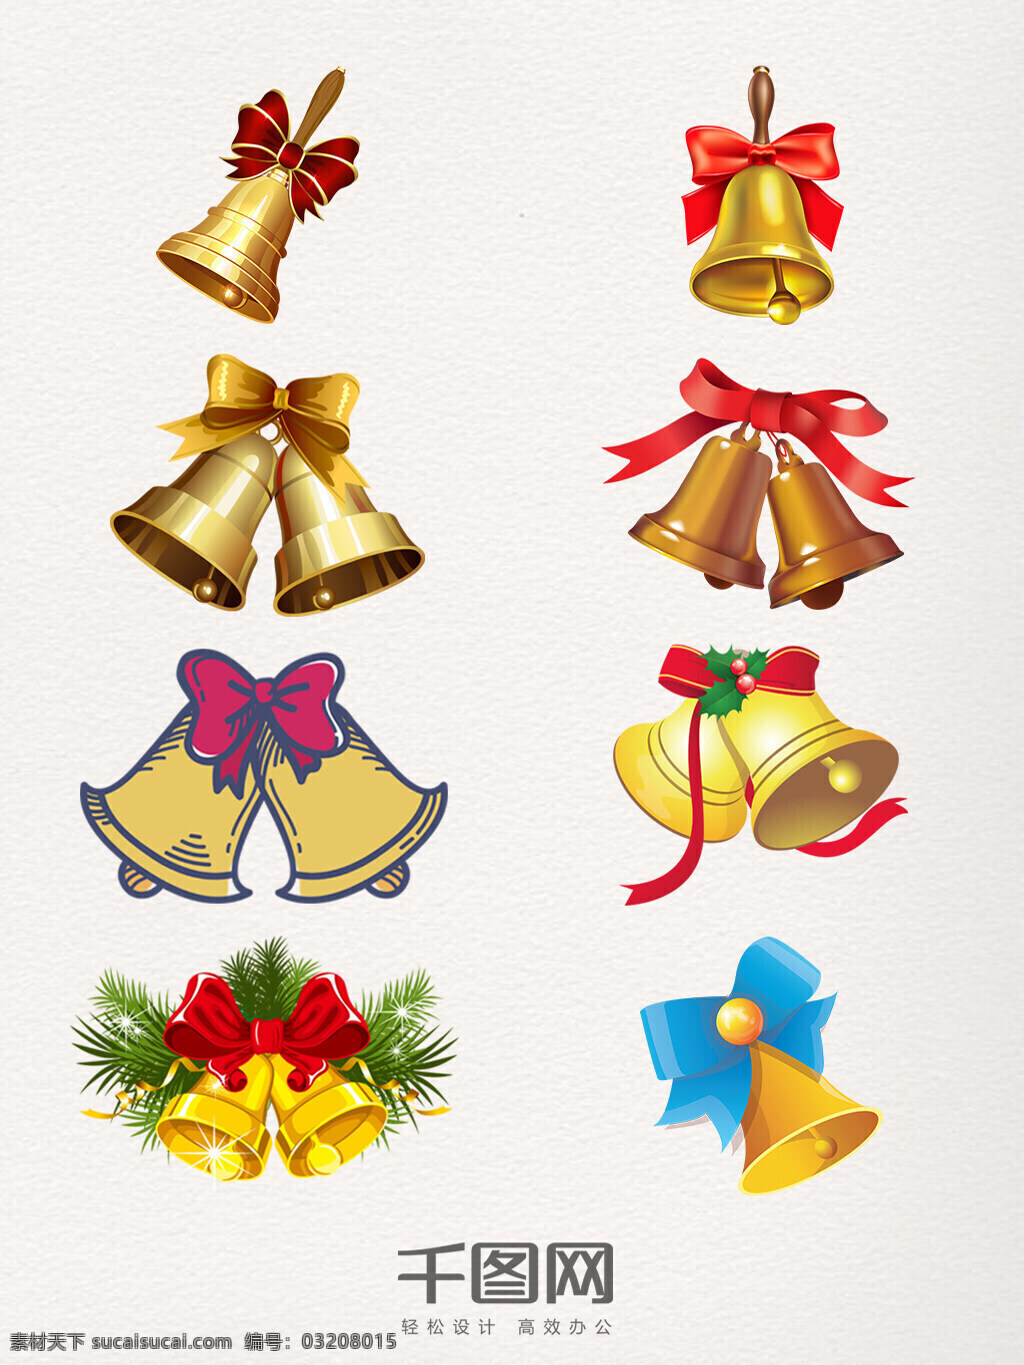 卡通 圣诞 铃铛 装饰 图案 铃铛卡通 手绘 精美 创意 圣诞节 简易 金色铃铛 铃铛素材